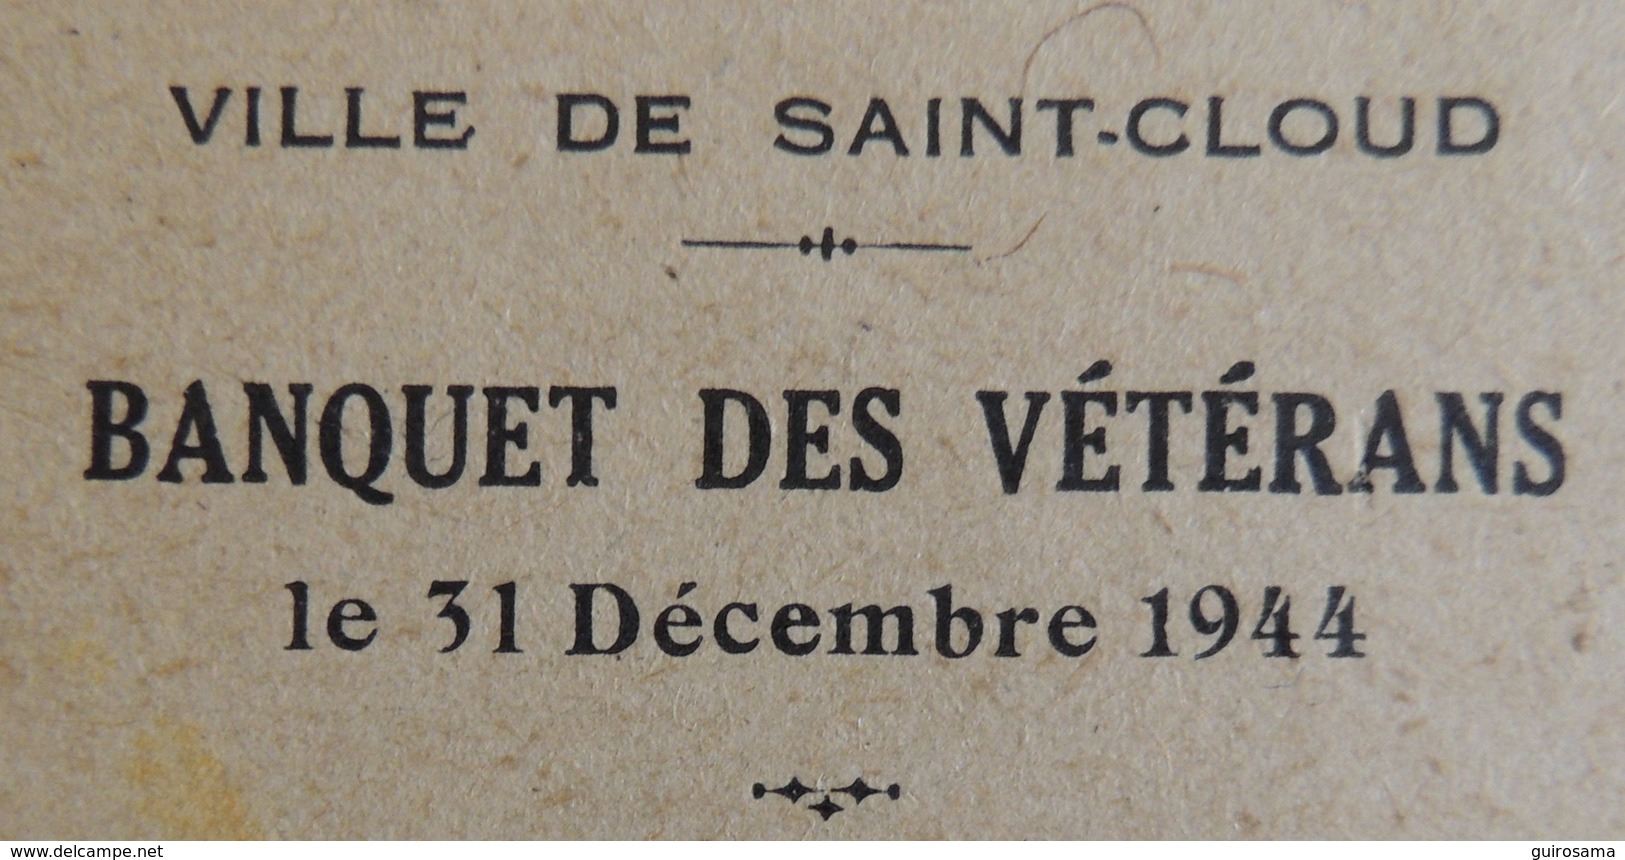 Menu Du 31 Décembre 1944 Du Banquet Des Vétérans De La Ville De Saint-Cloud - Menus